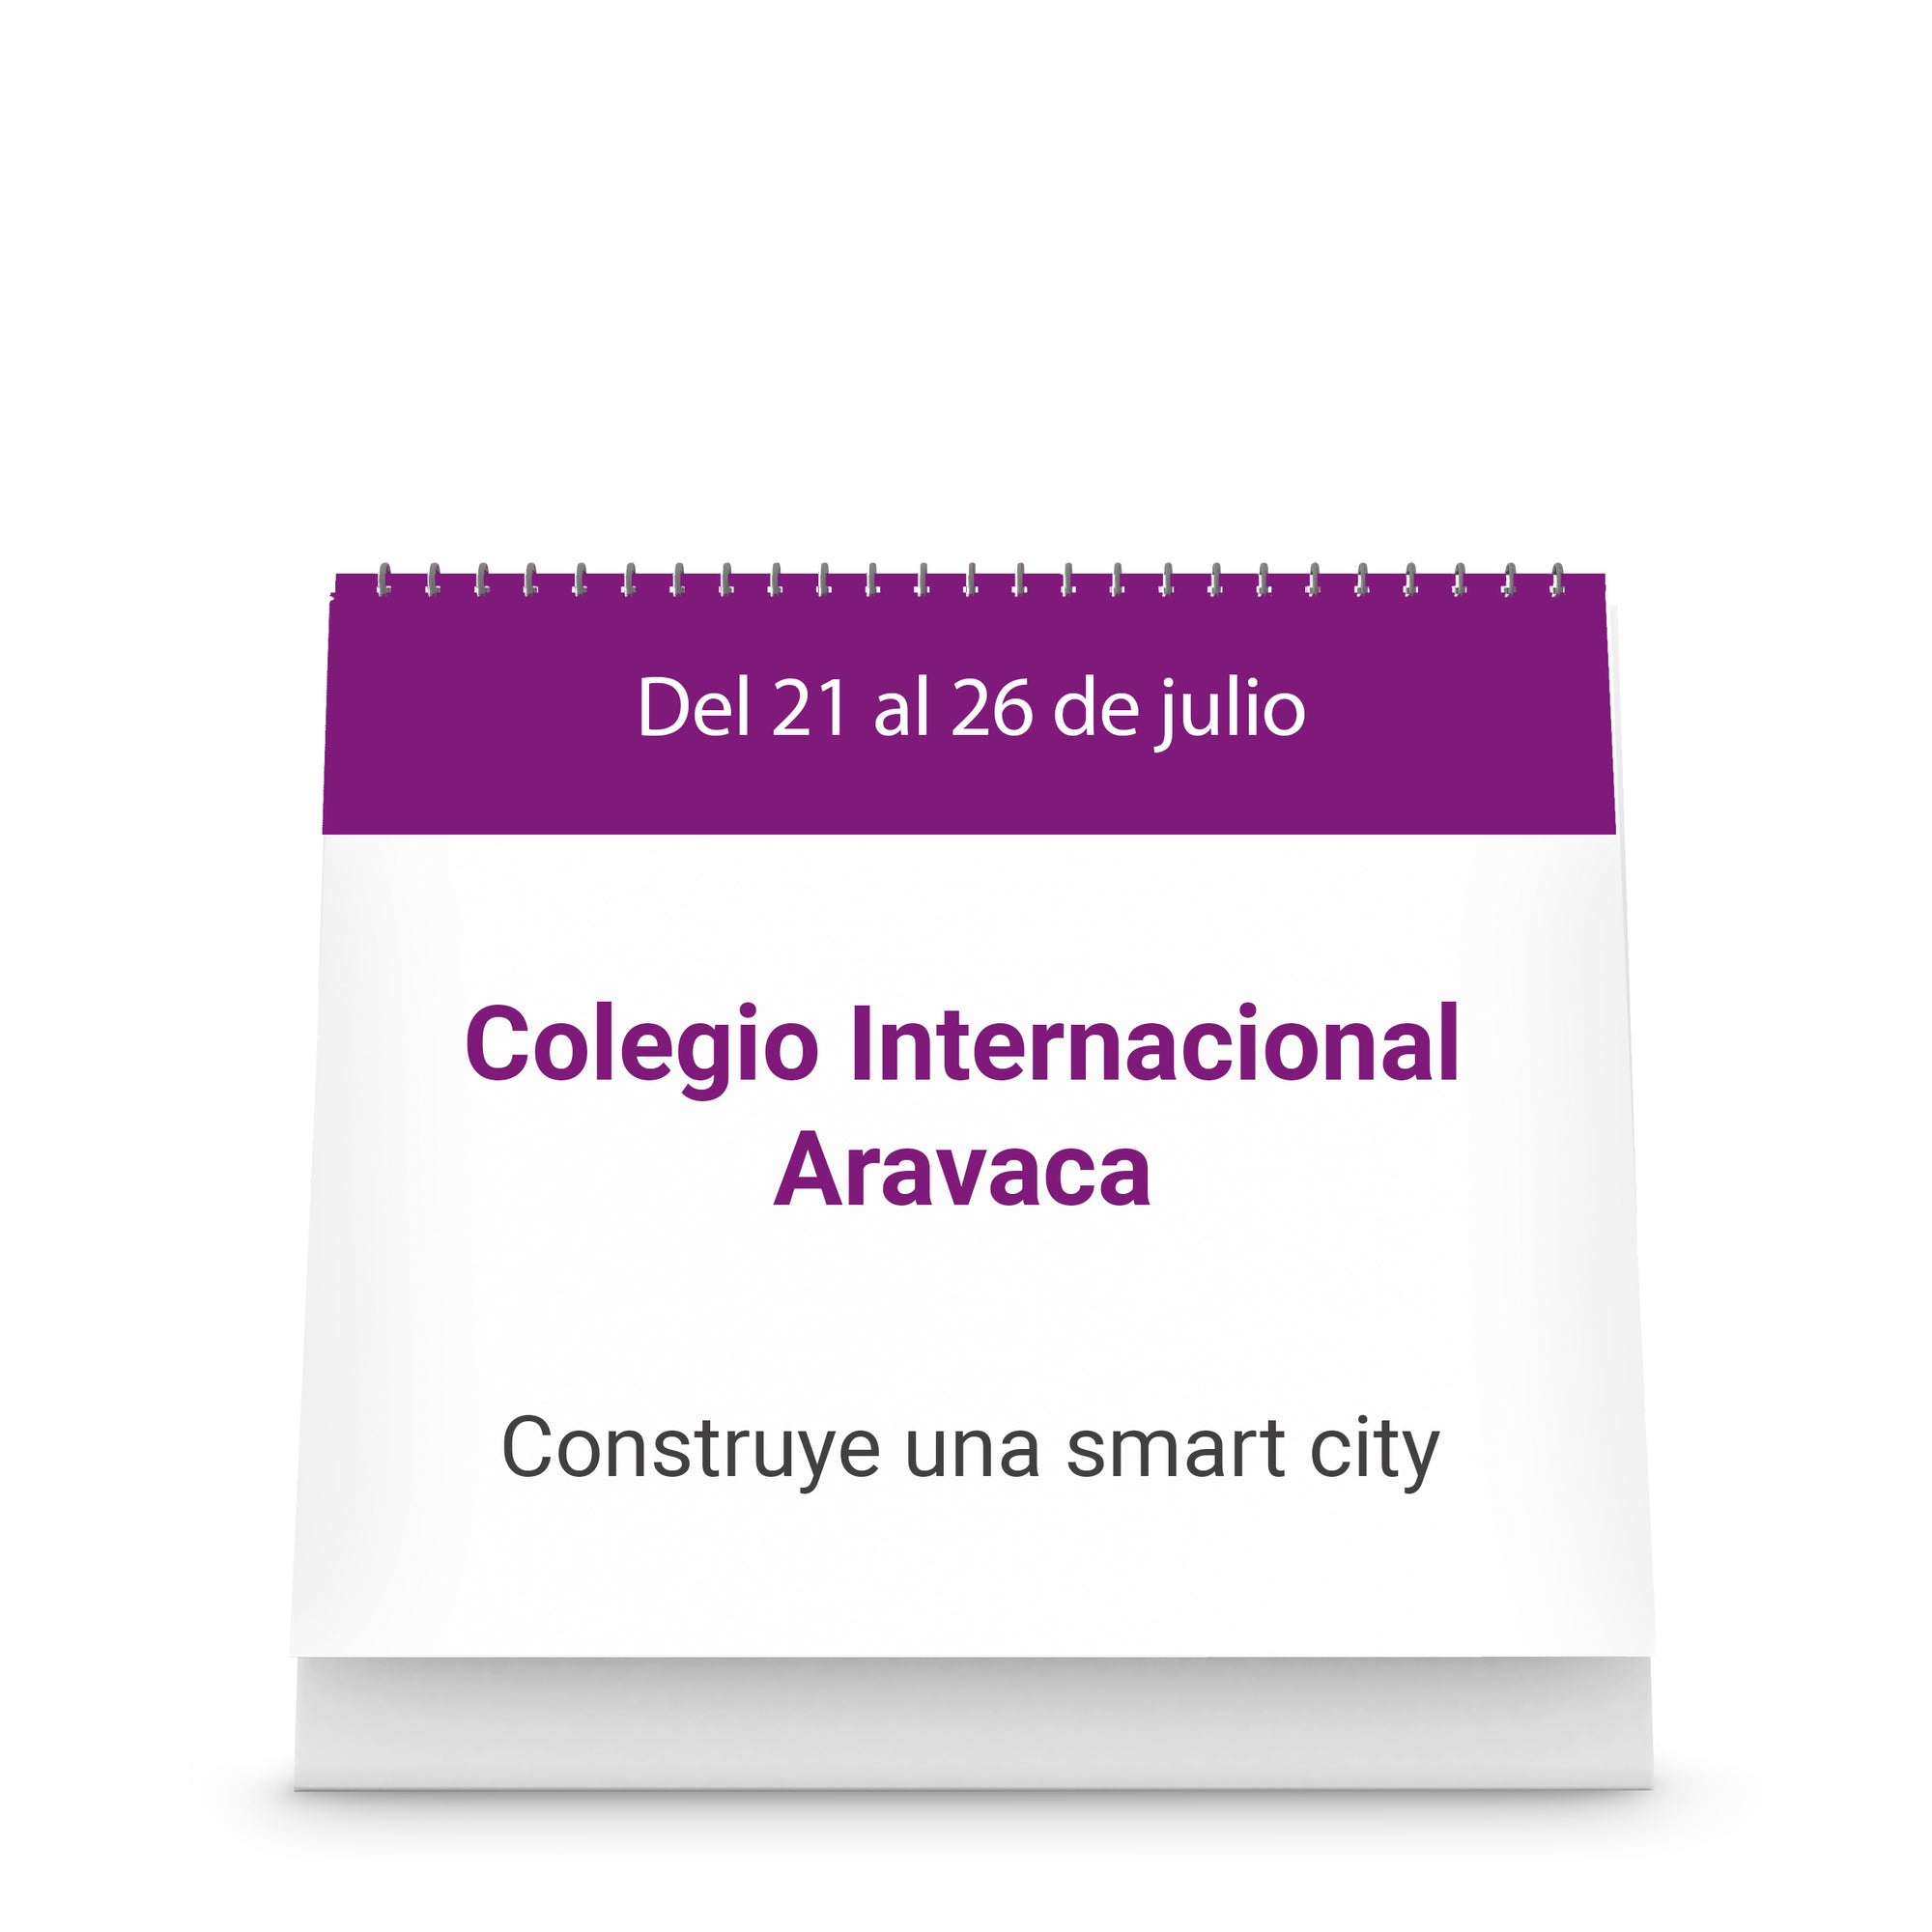 Colegio Internacional Aravaca - Construye una smart city